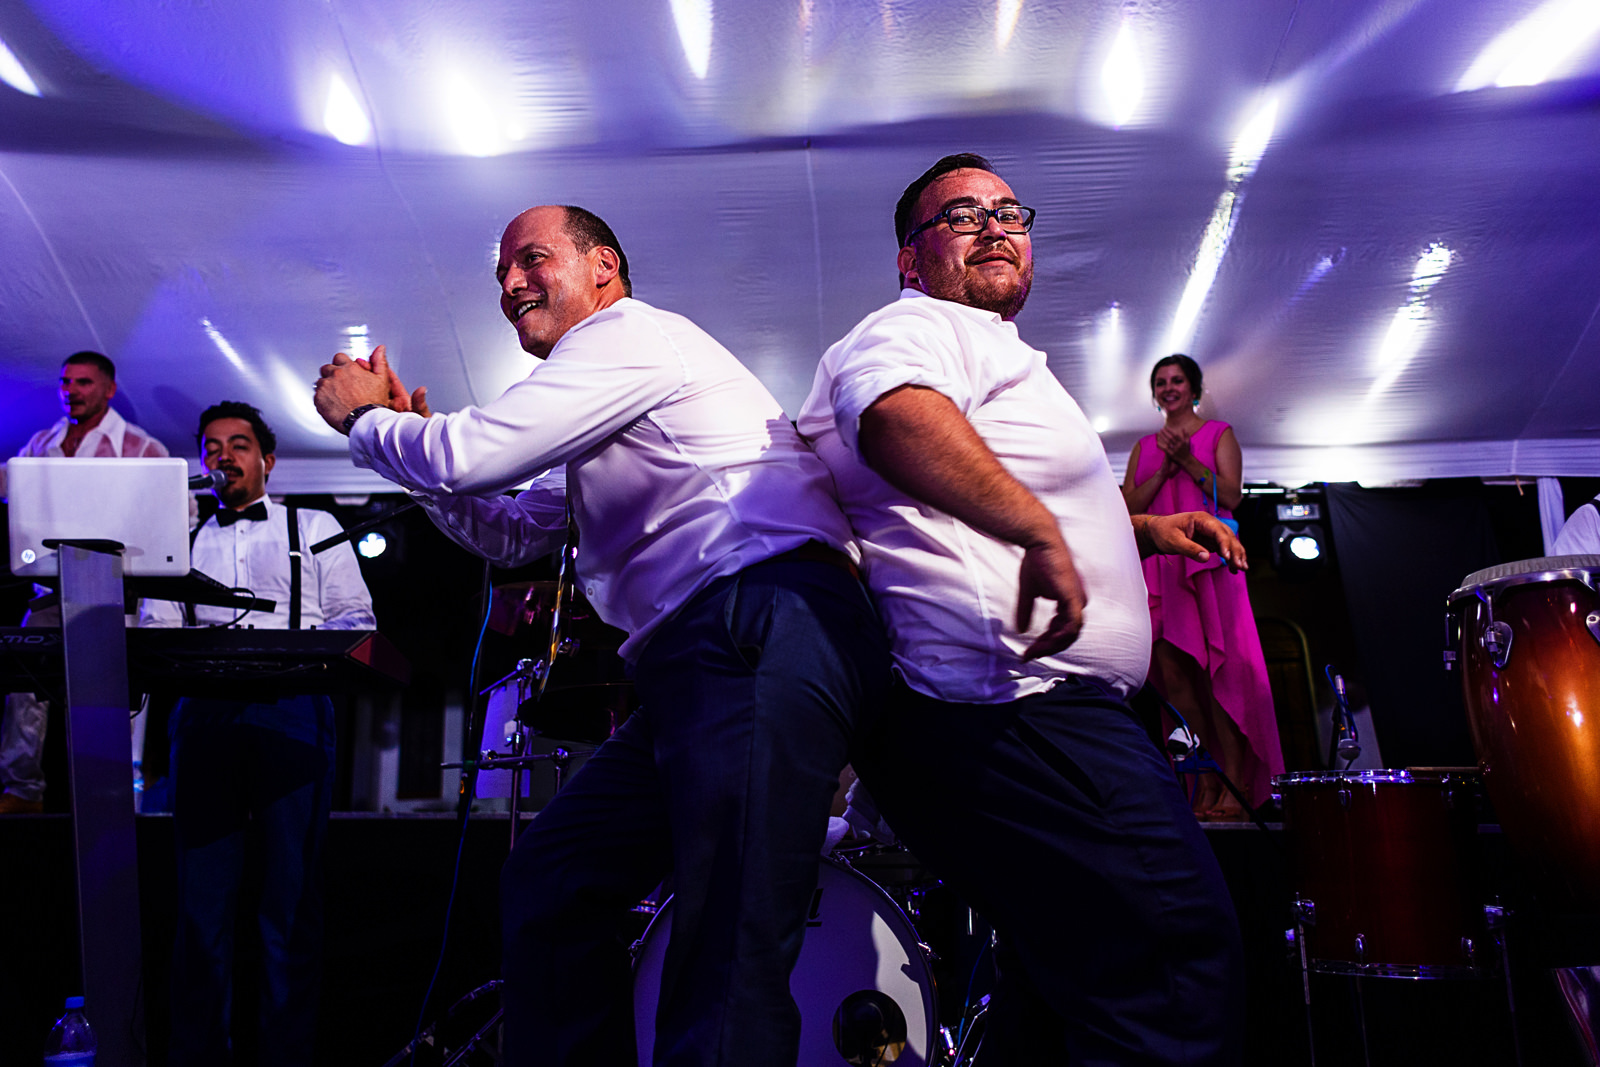 Dos hombres concursan bailando en el escenario junto a la banda musical